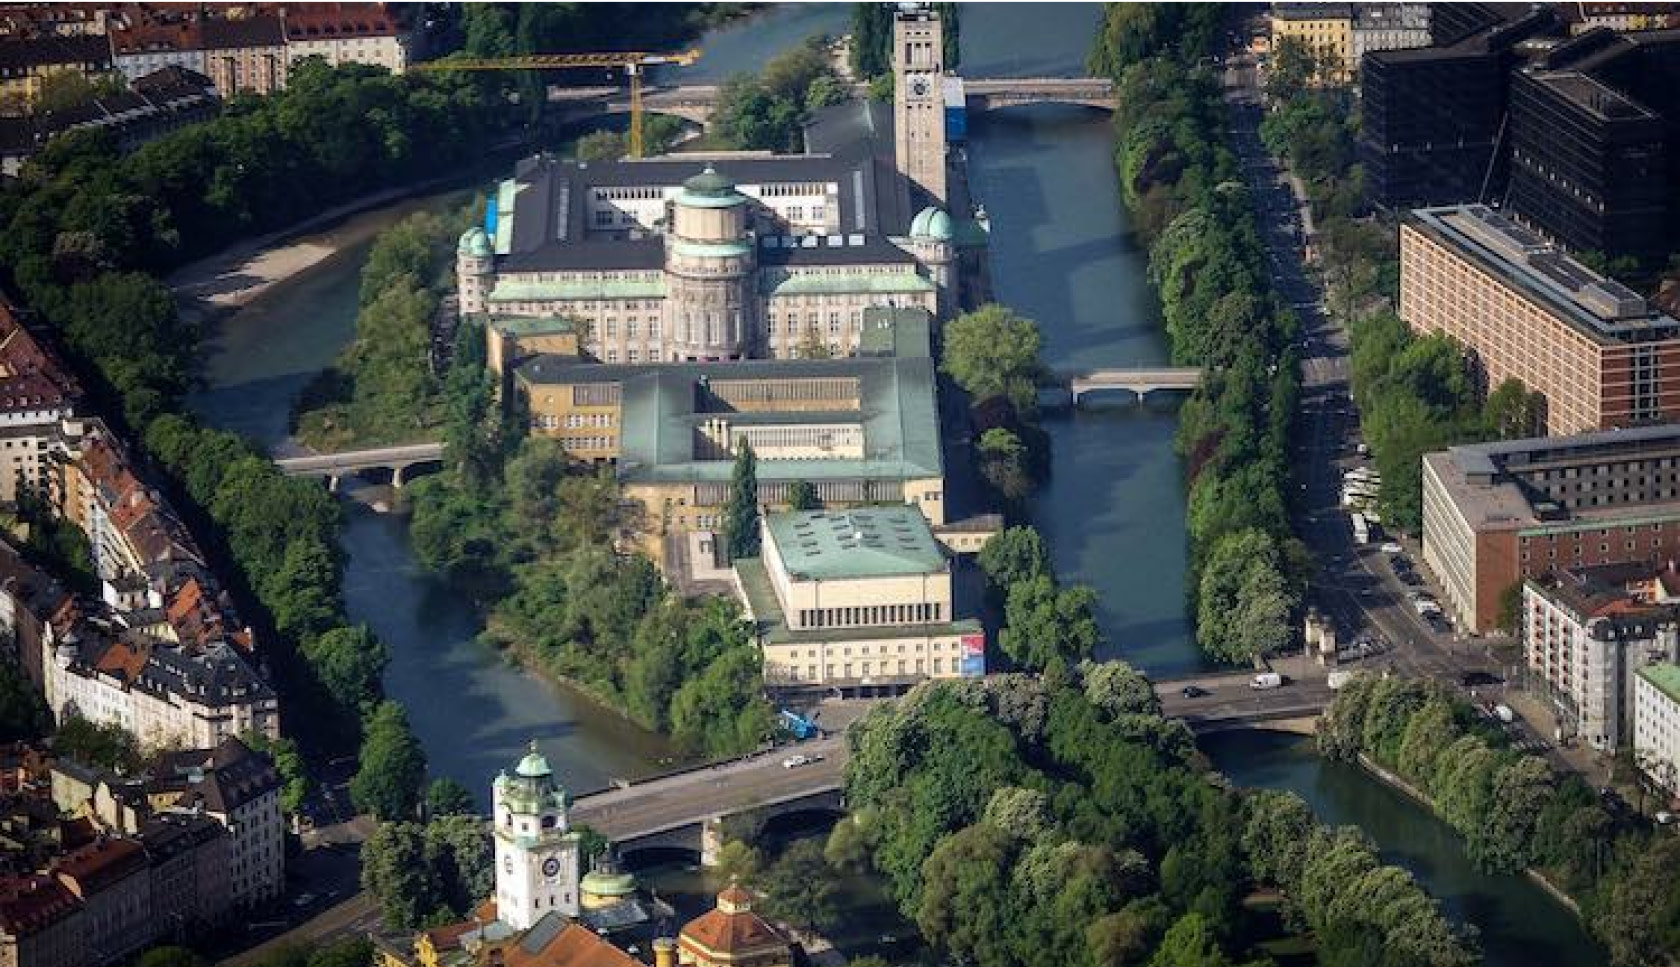 Luftbild des Deutschen Museums, auf der Flussinsel der Isar. Highlight bei einem Stadtrundgang durch München!